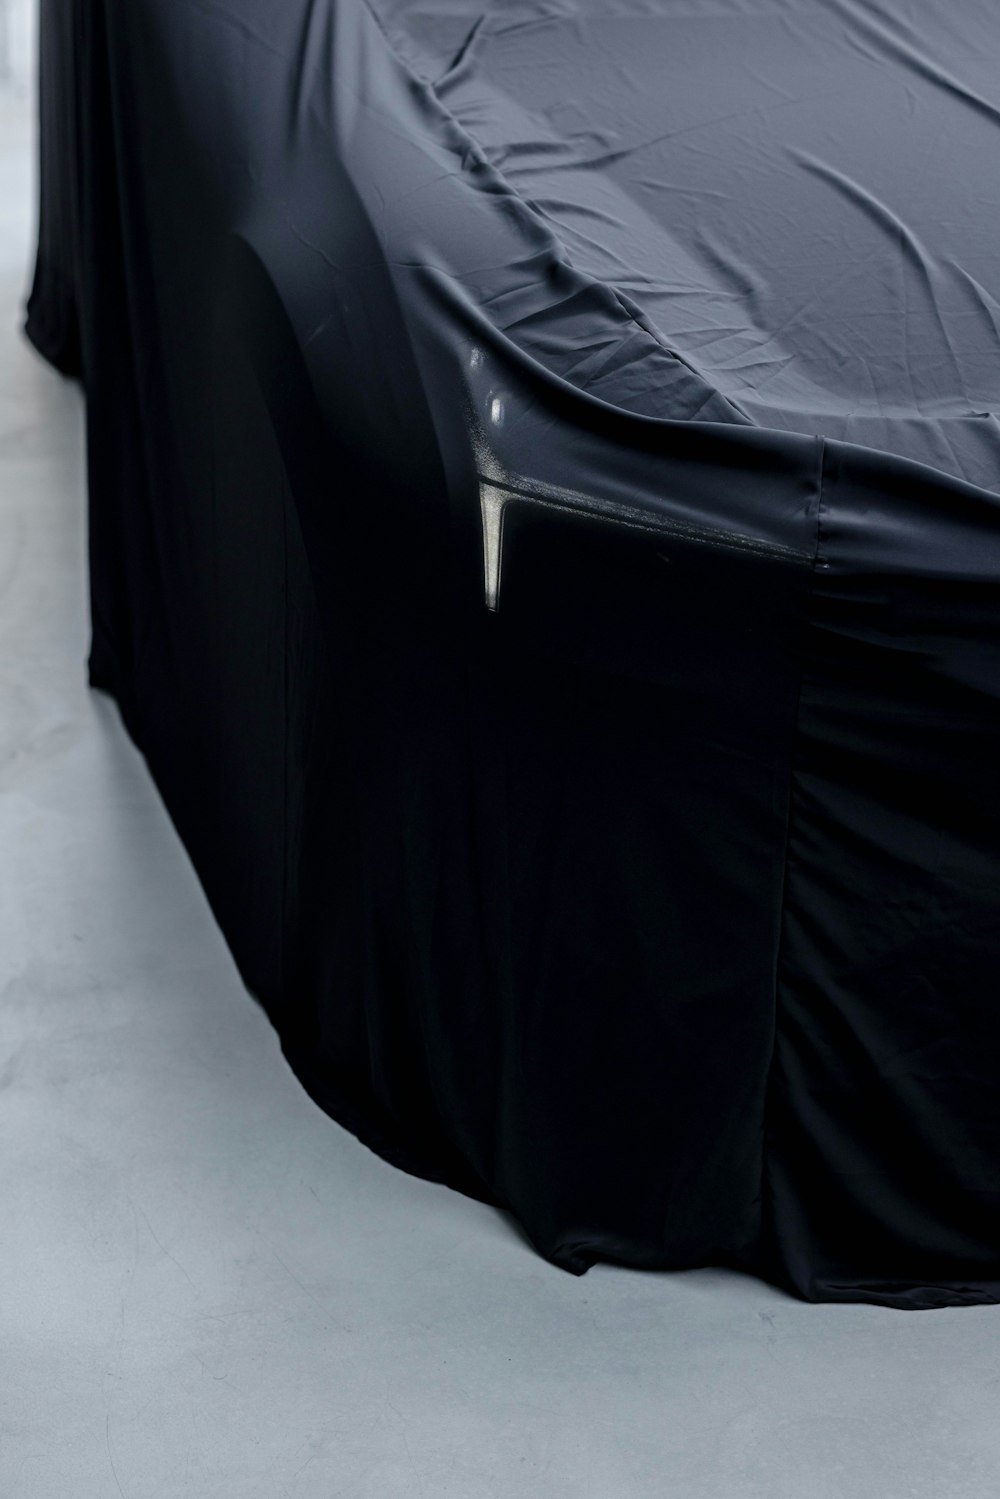 Un'auto coperta da una copertina nera seduta sopra un pavimento bianco